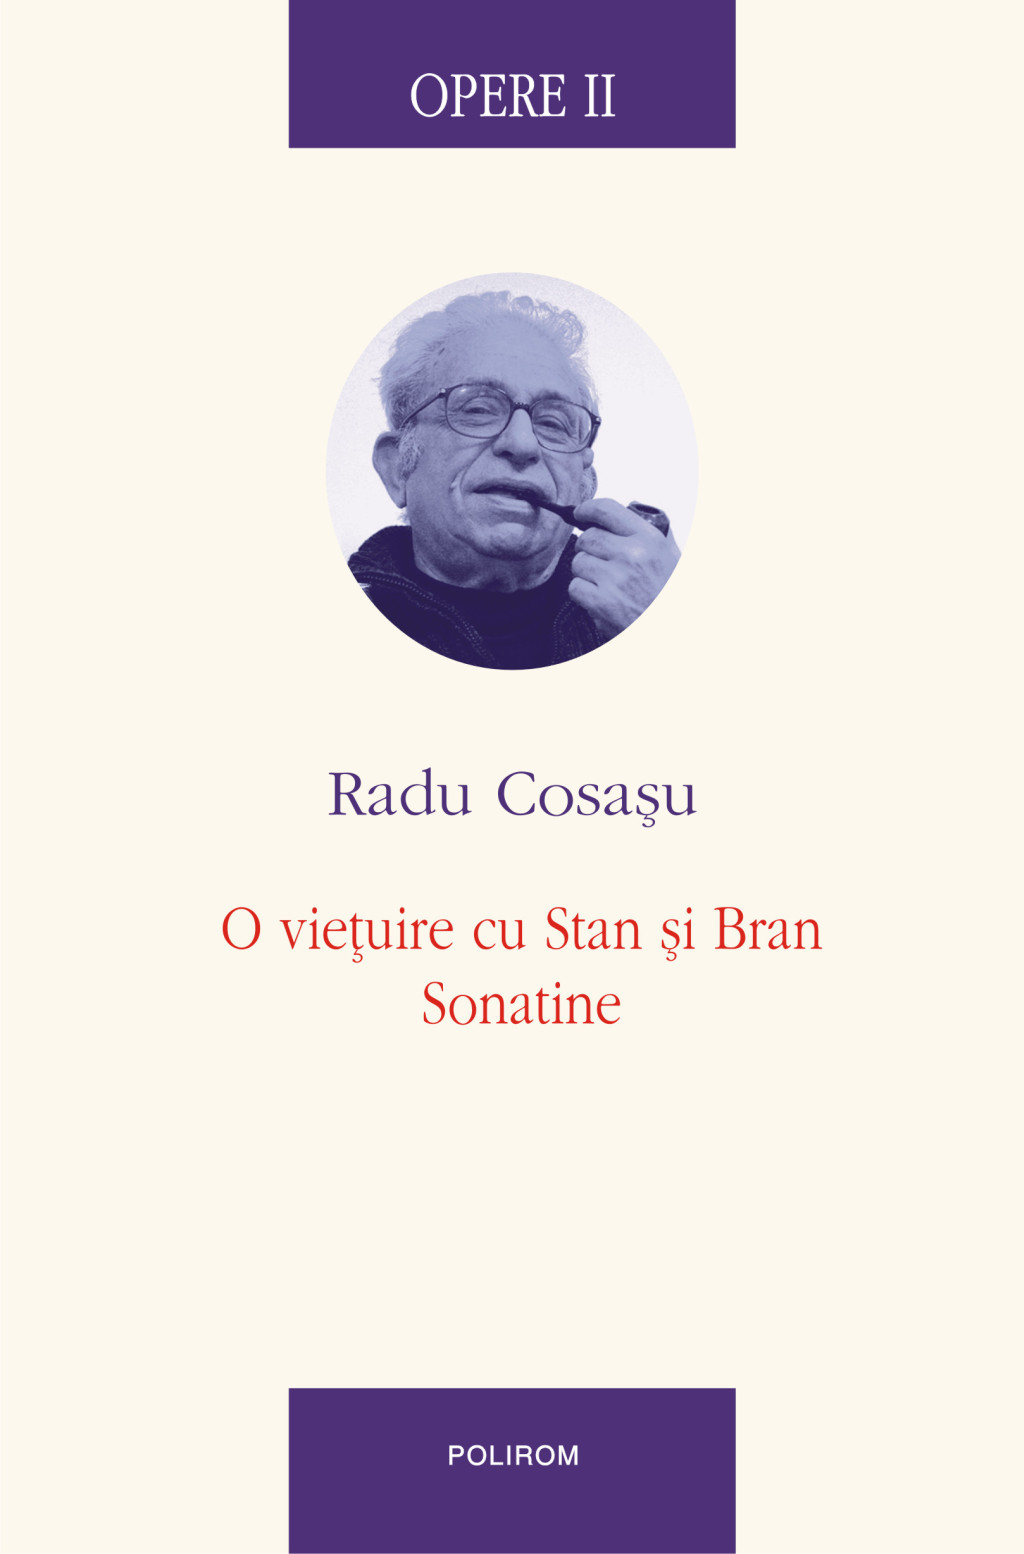 eBook Opere II. O vietuire cu stan si Bran, Sonatine - Radu Cosasu